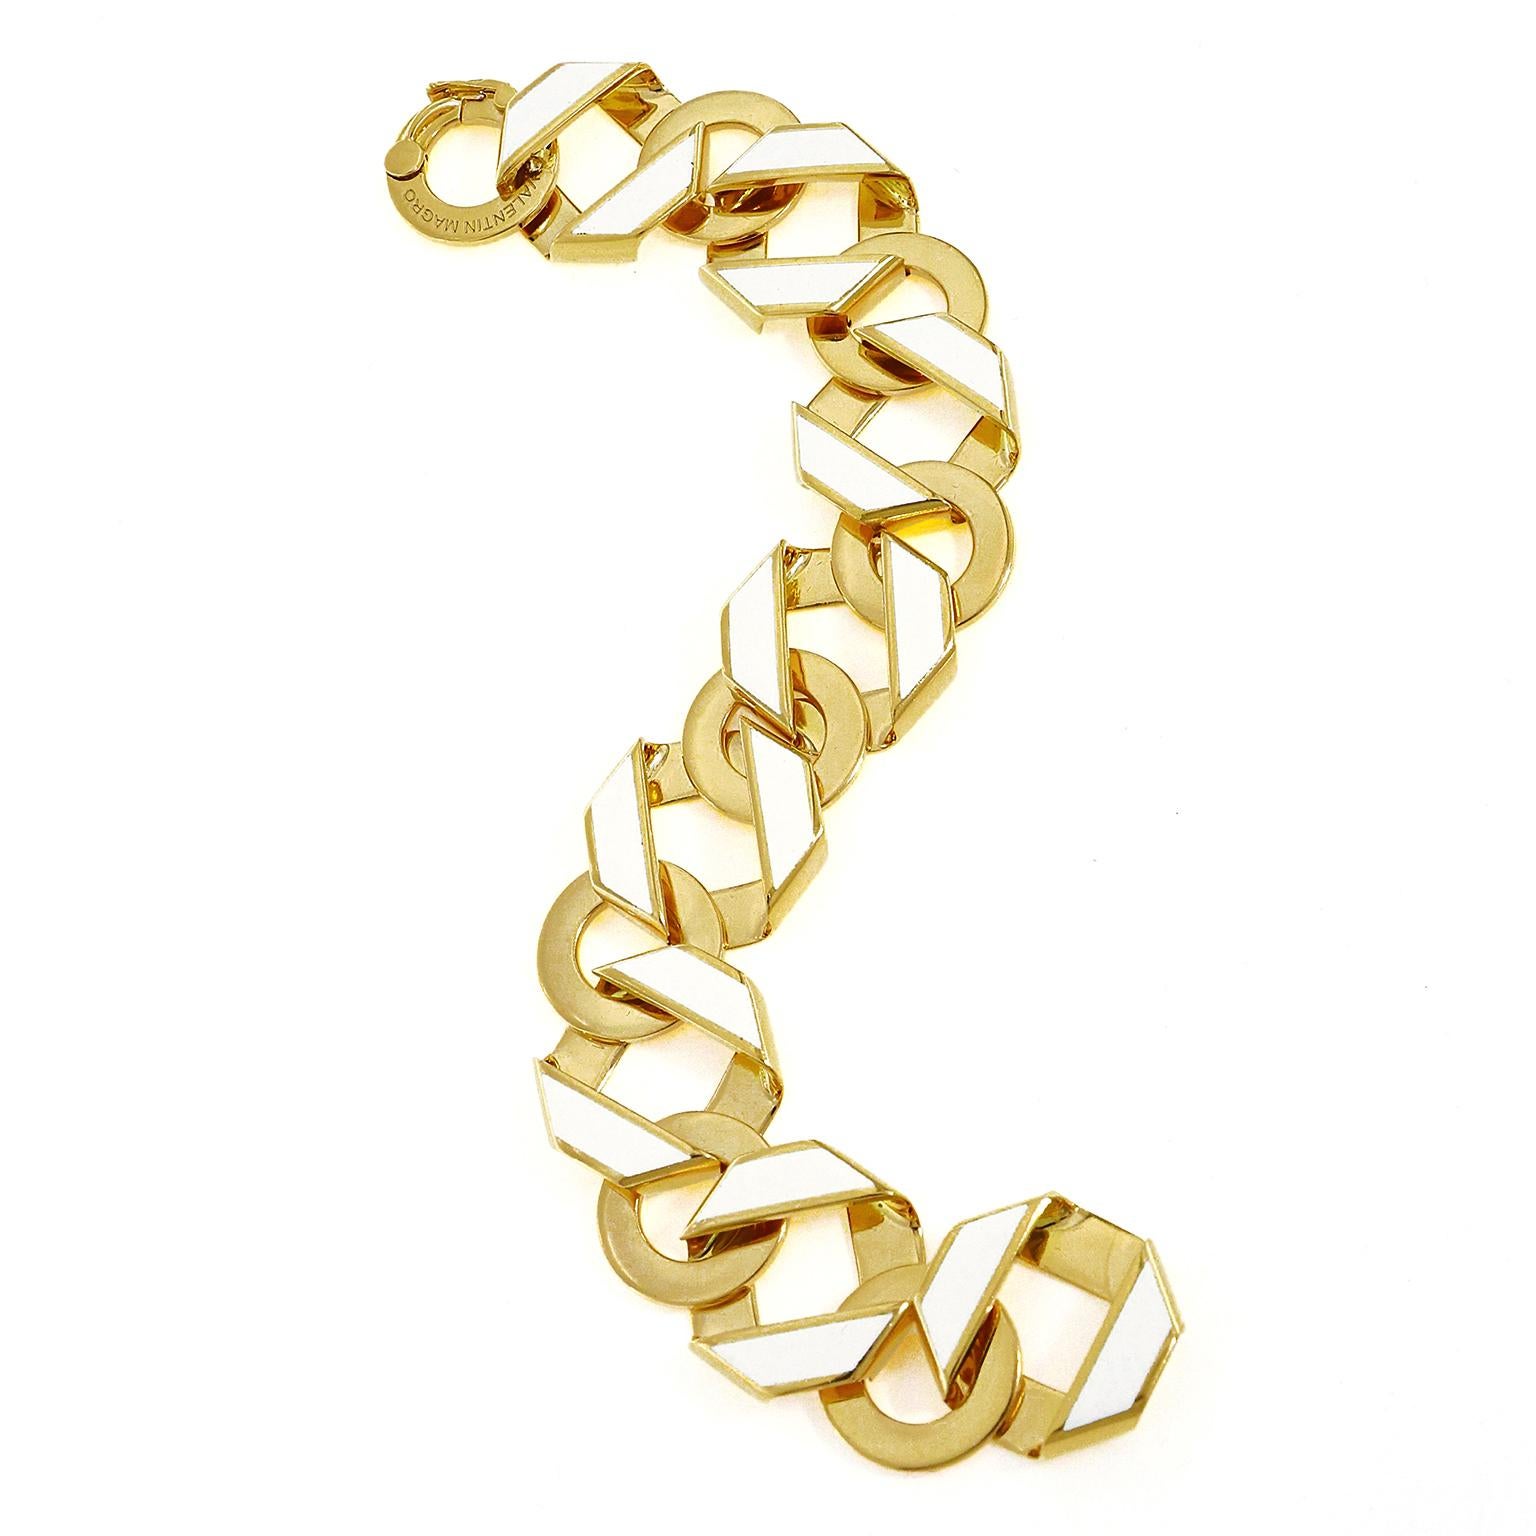 L'or jaune 18k et l'émail blanc s'unissent pour apporter un éclat à ce bracelet. Un motif entrelacé de bandes hexagonales aplaties alterne avec des disques plats. Les bandes hexagonales présentent un émail blanc sur les côtés pour que l'or se